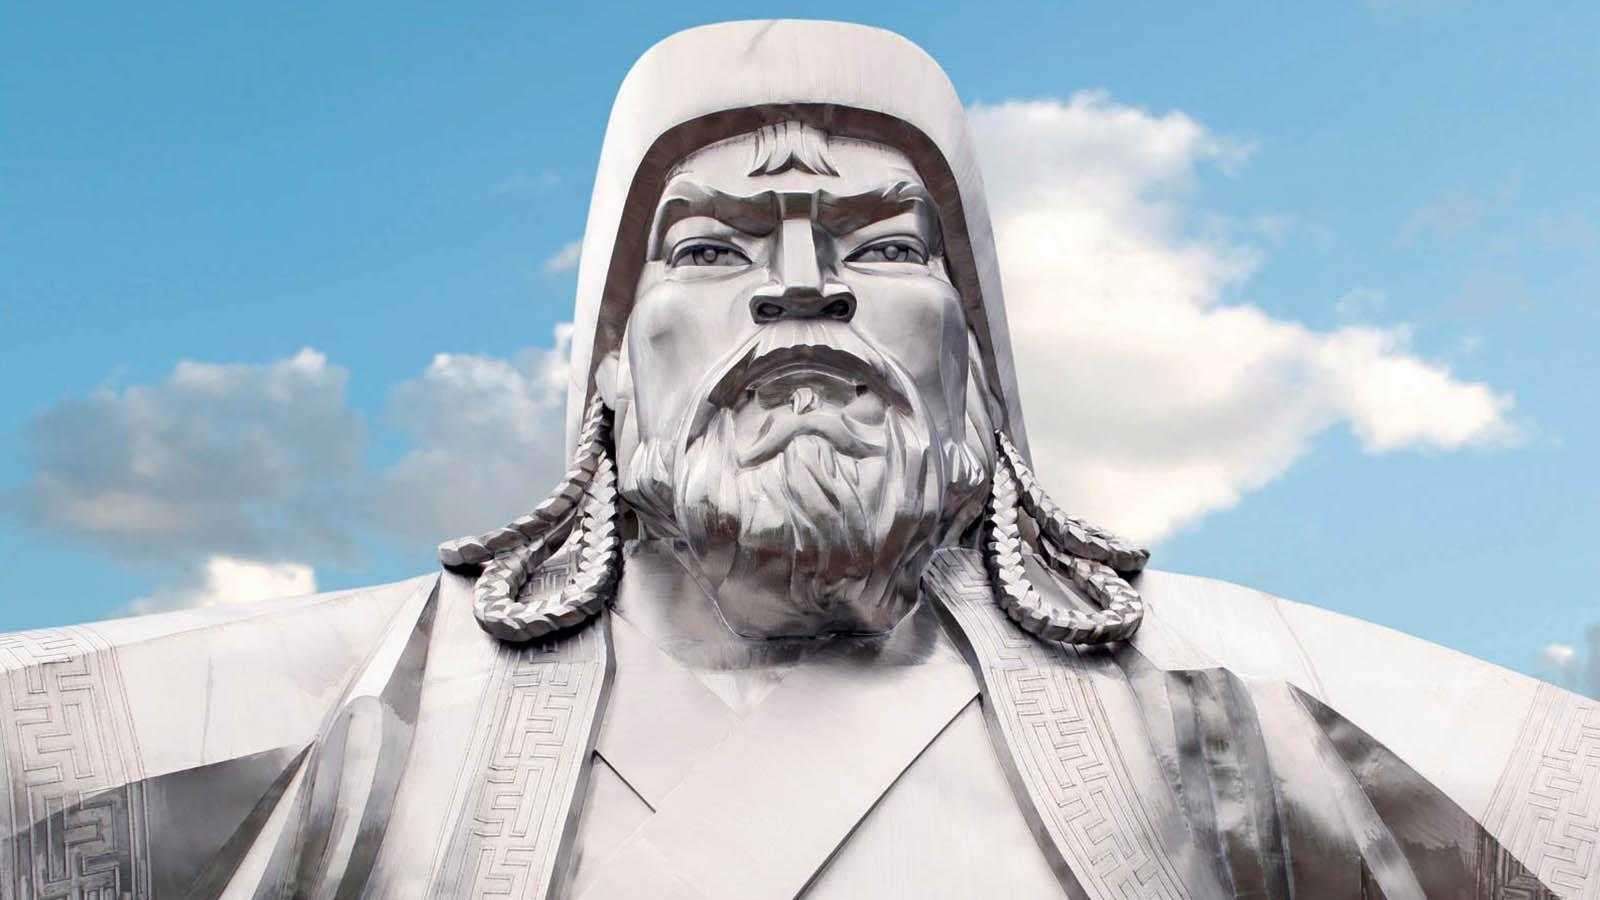 Tarihin Gölgesinde Kalan Hükümdar Cengiz Han ve Moğollar kapak fotoğrafı